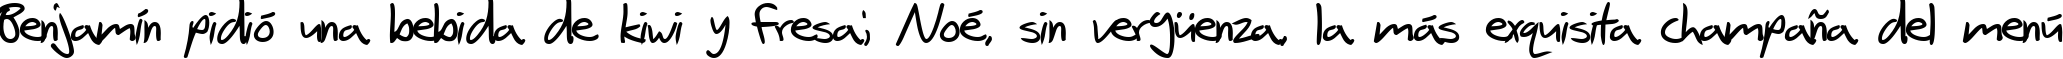 Пример написания шрифтом SF Scribbled Sans Bold текста на испанском